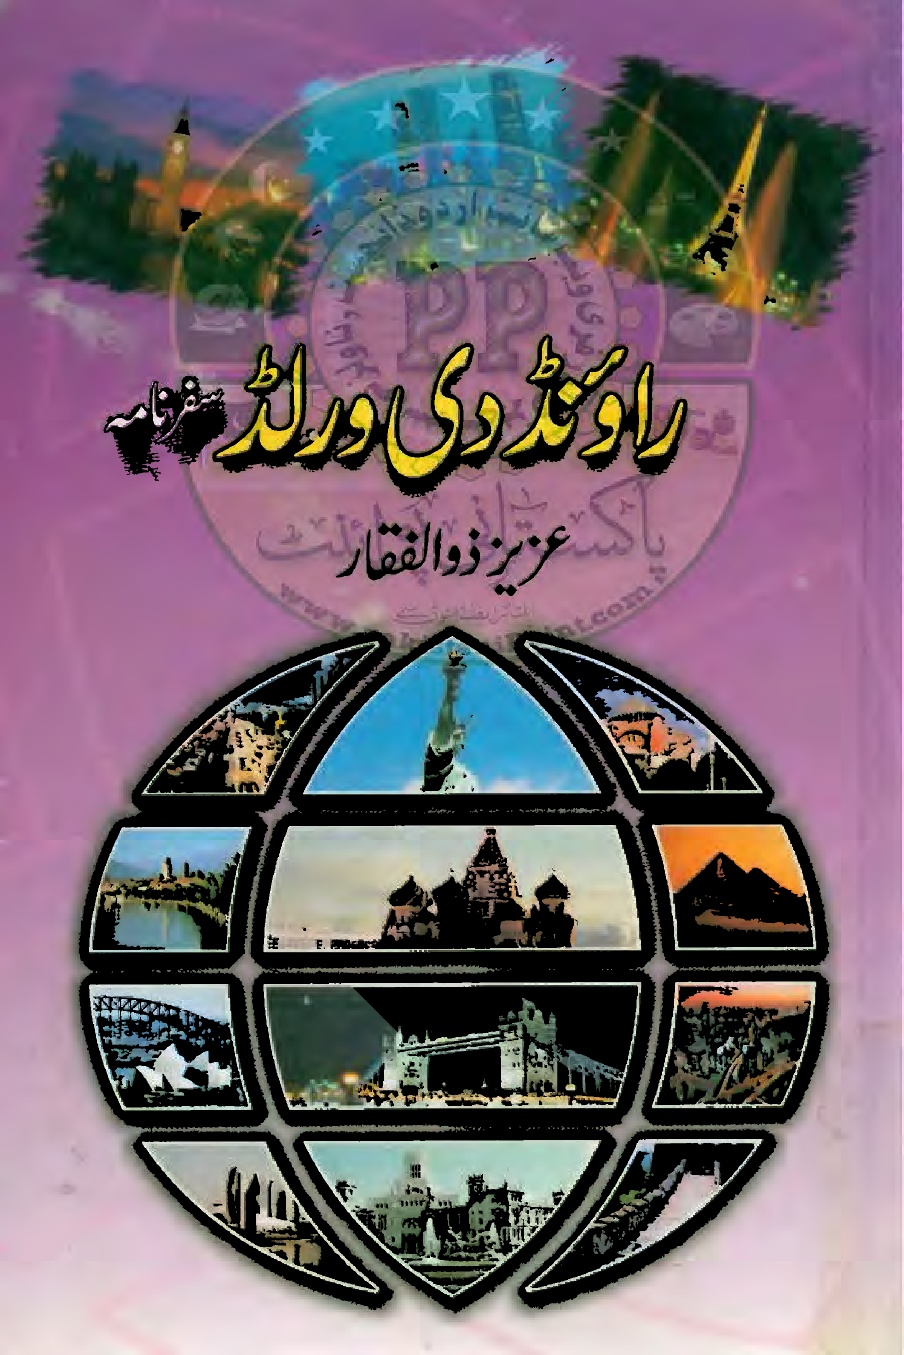 Round The World Urdu PDF by Aziz Zulifqar